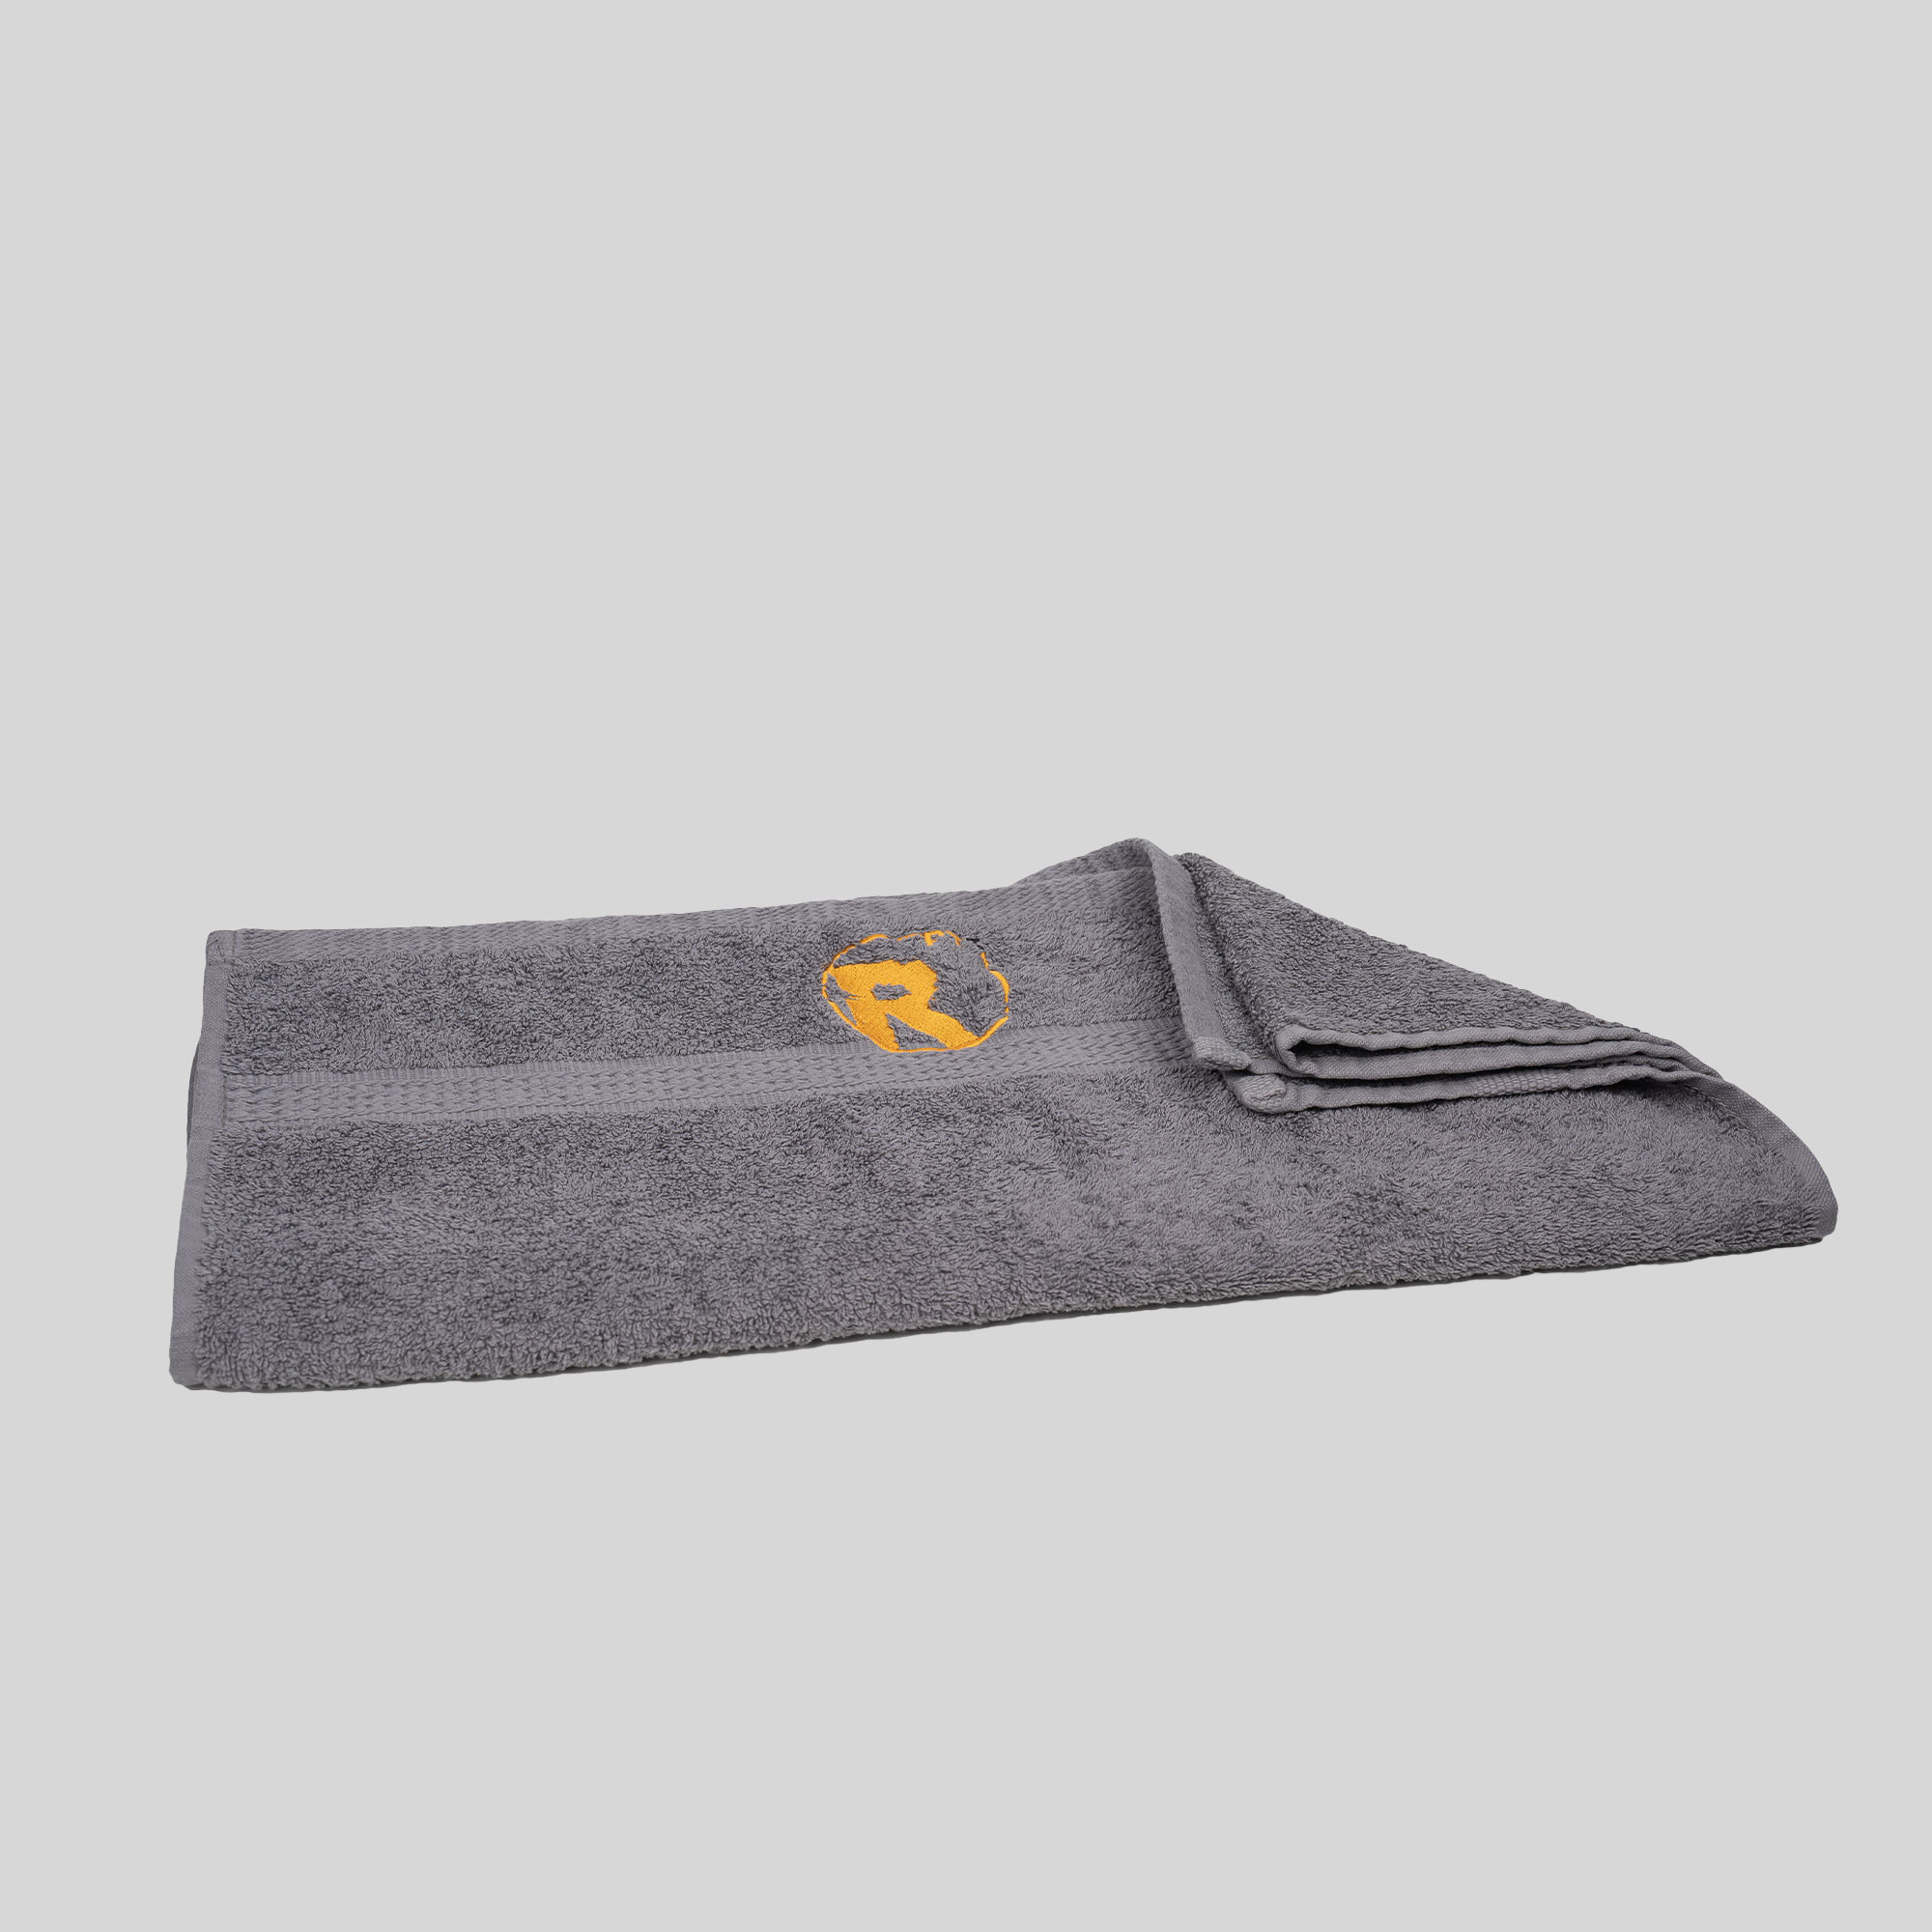 Ein graues [Produktname] mit dem Buchstaben r darauf.
Produktname: Handtuch